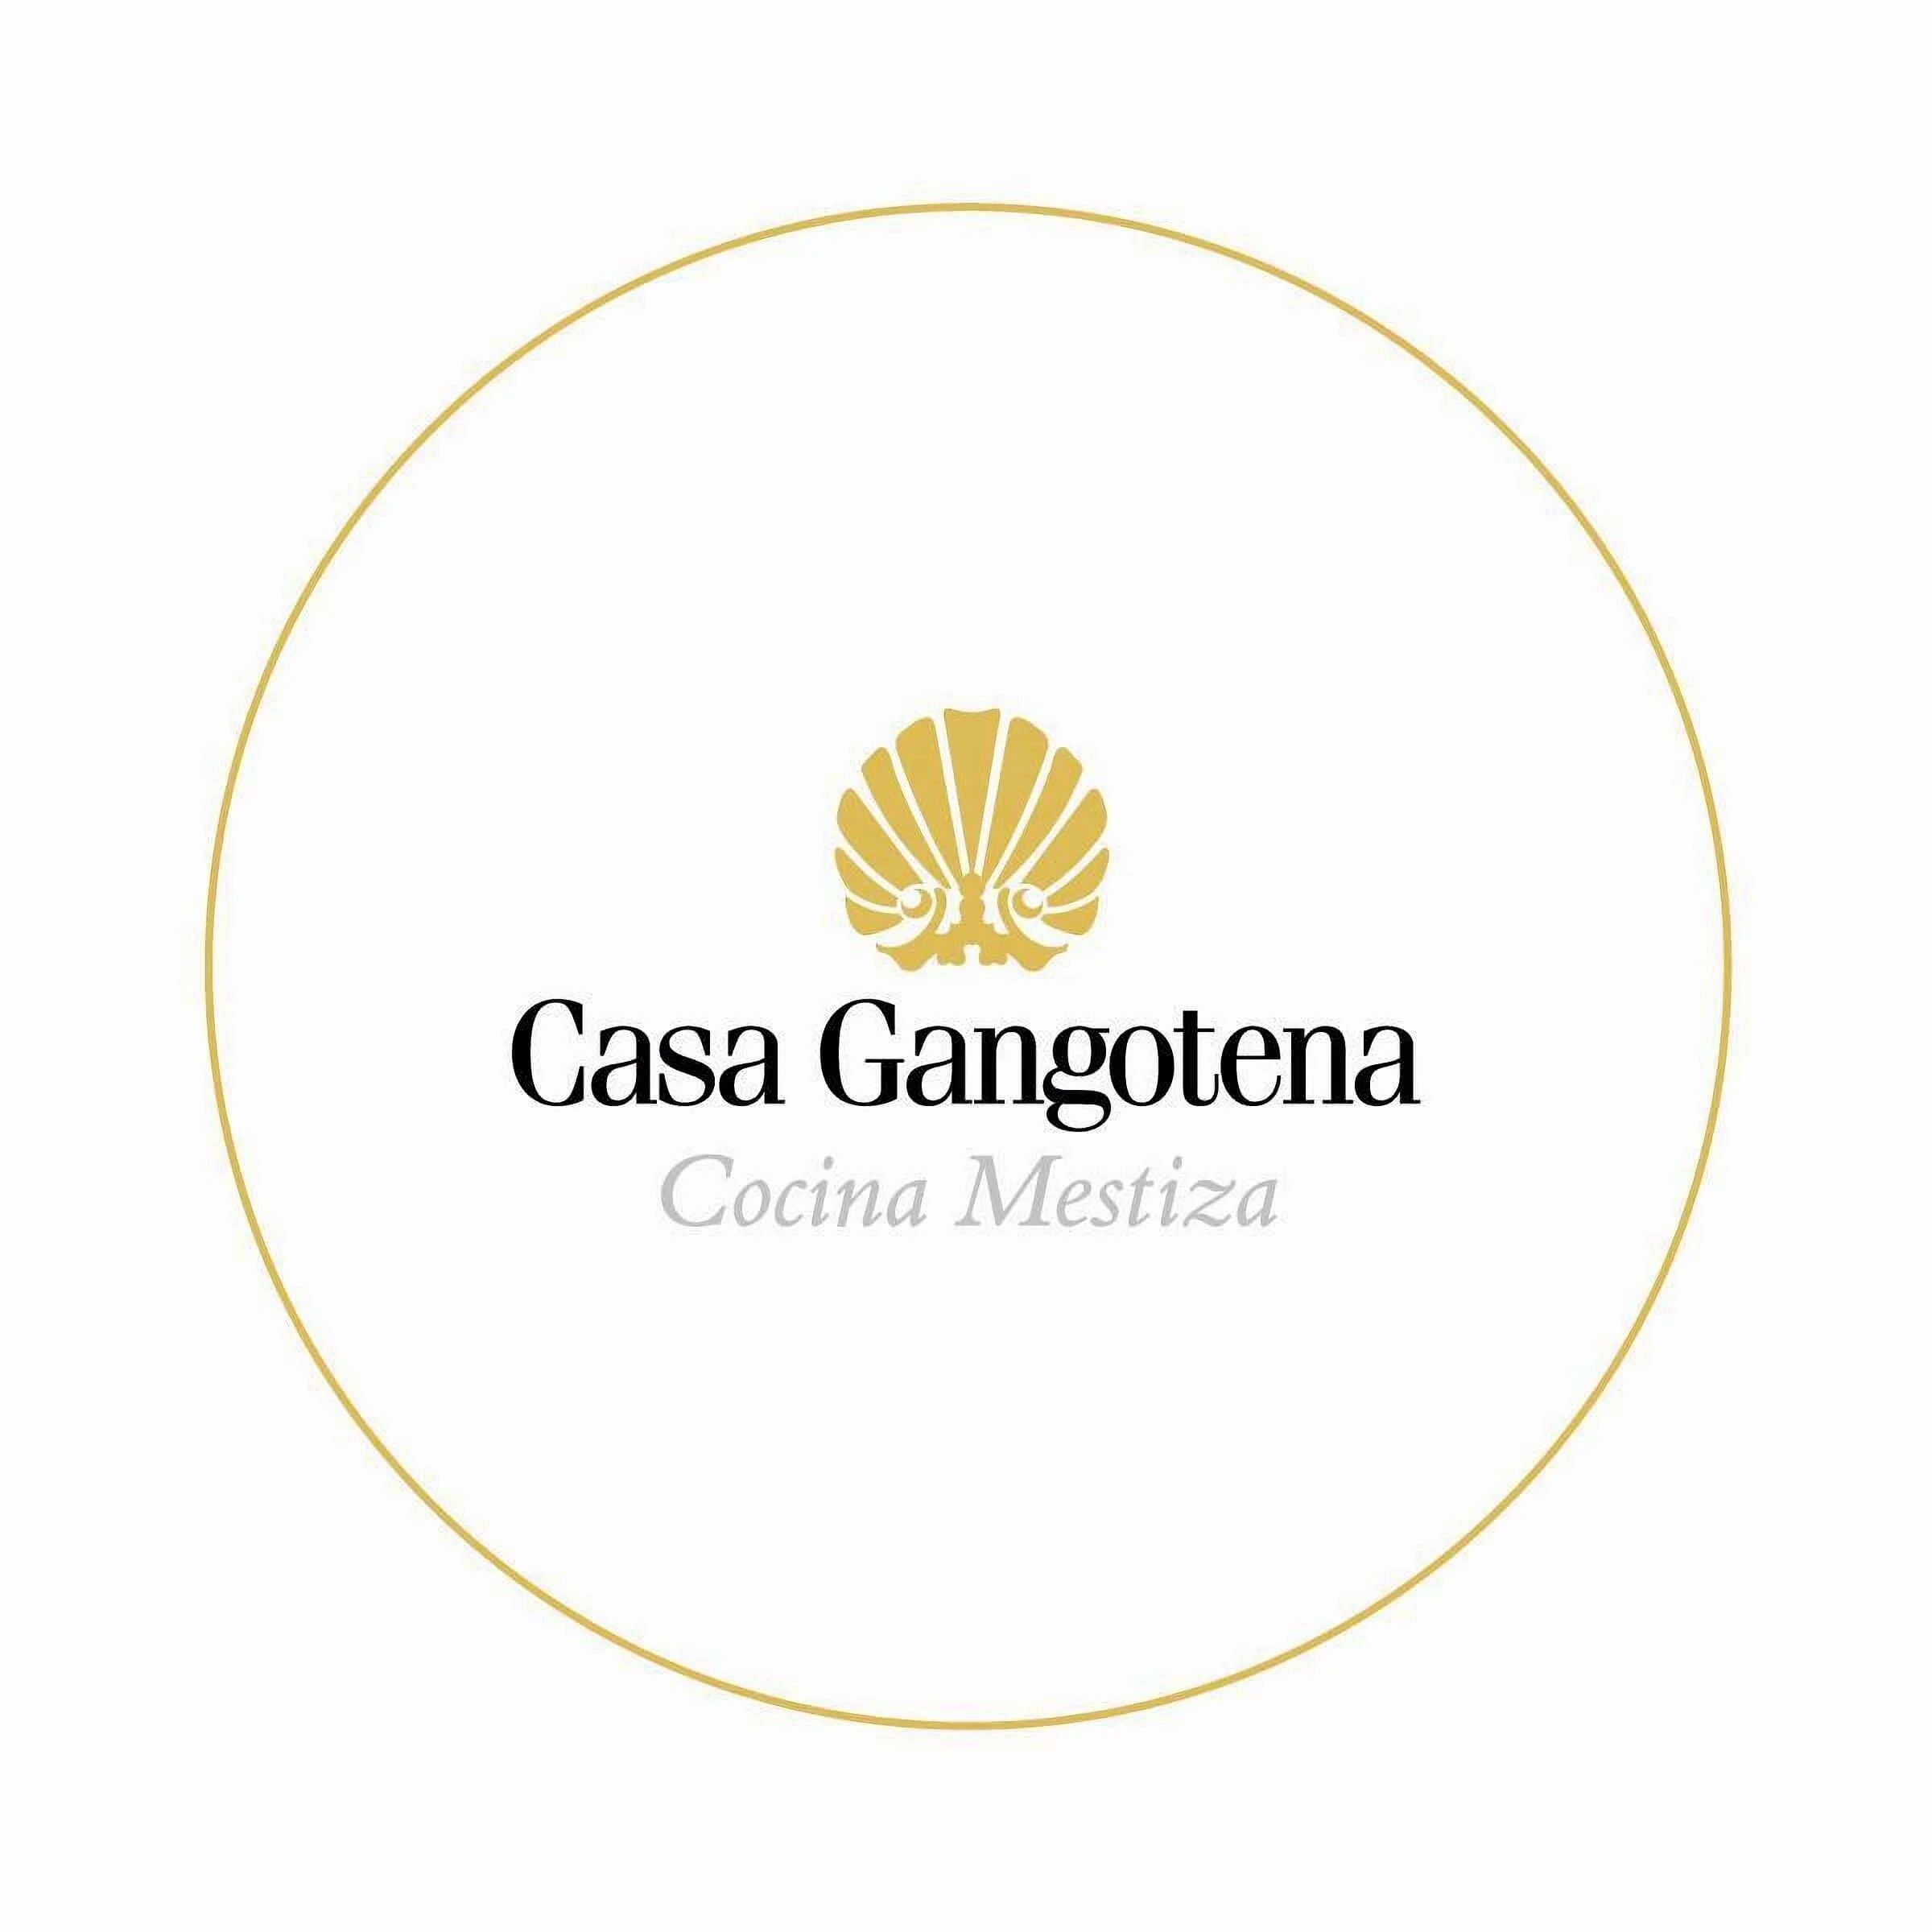 Restaurantes-restaurante-casa-gangotena-17787